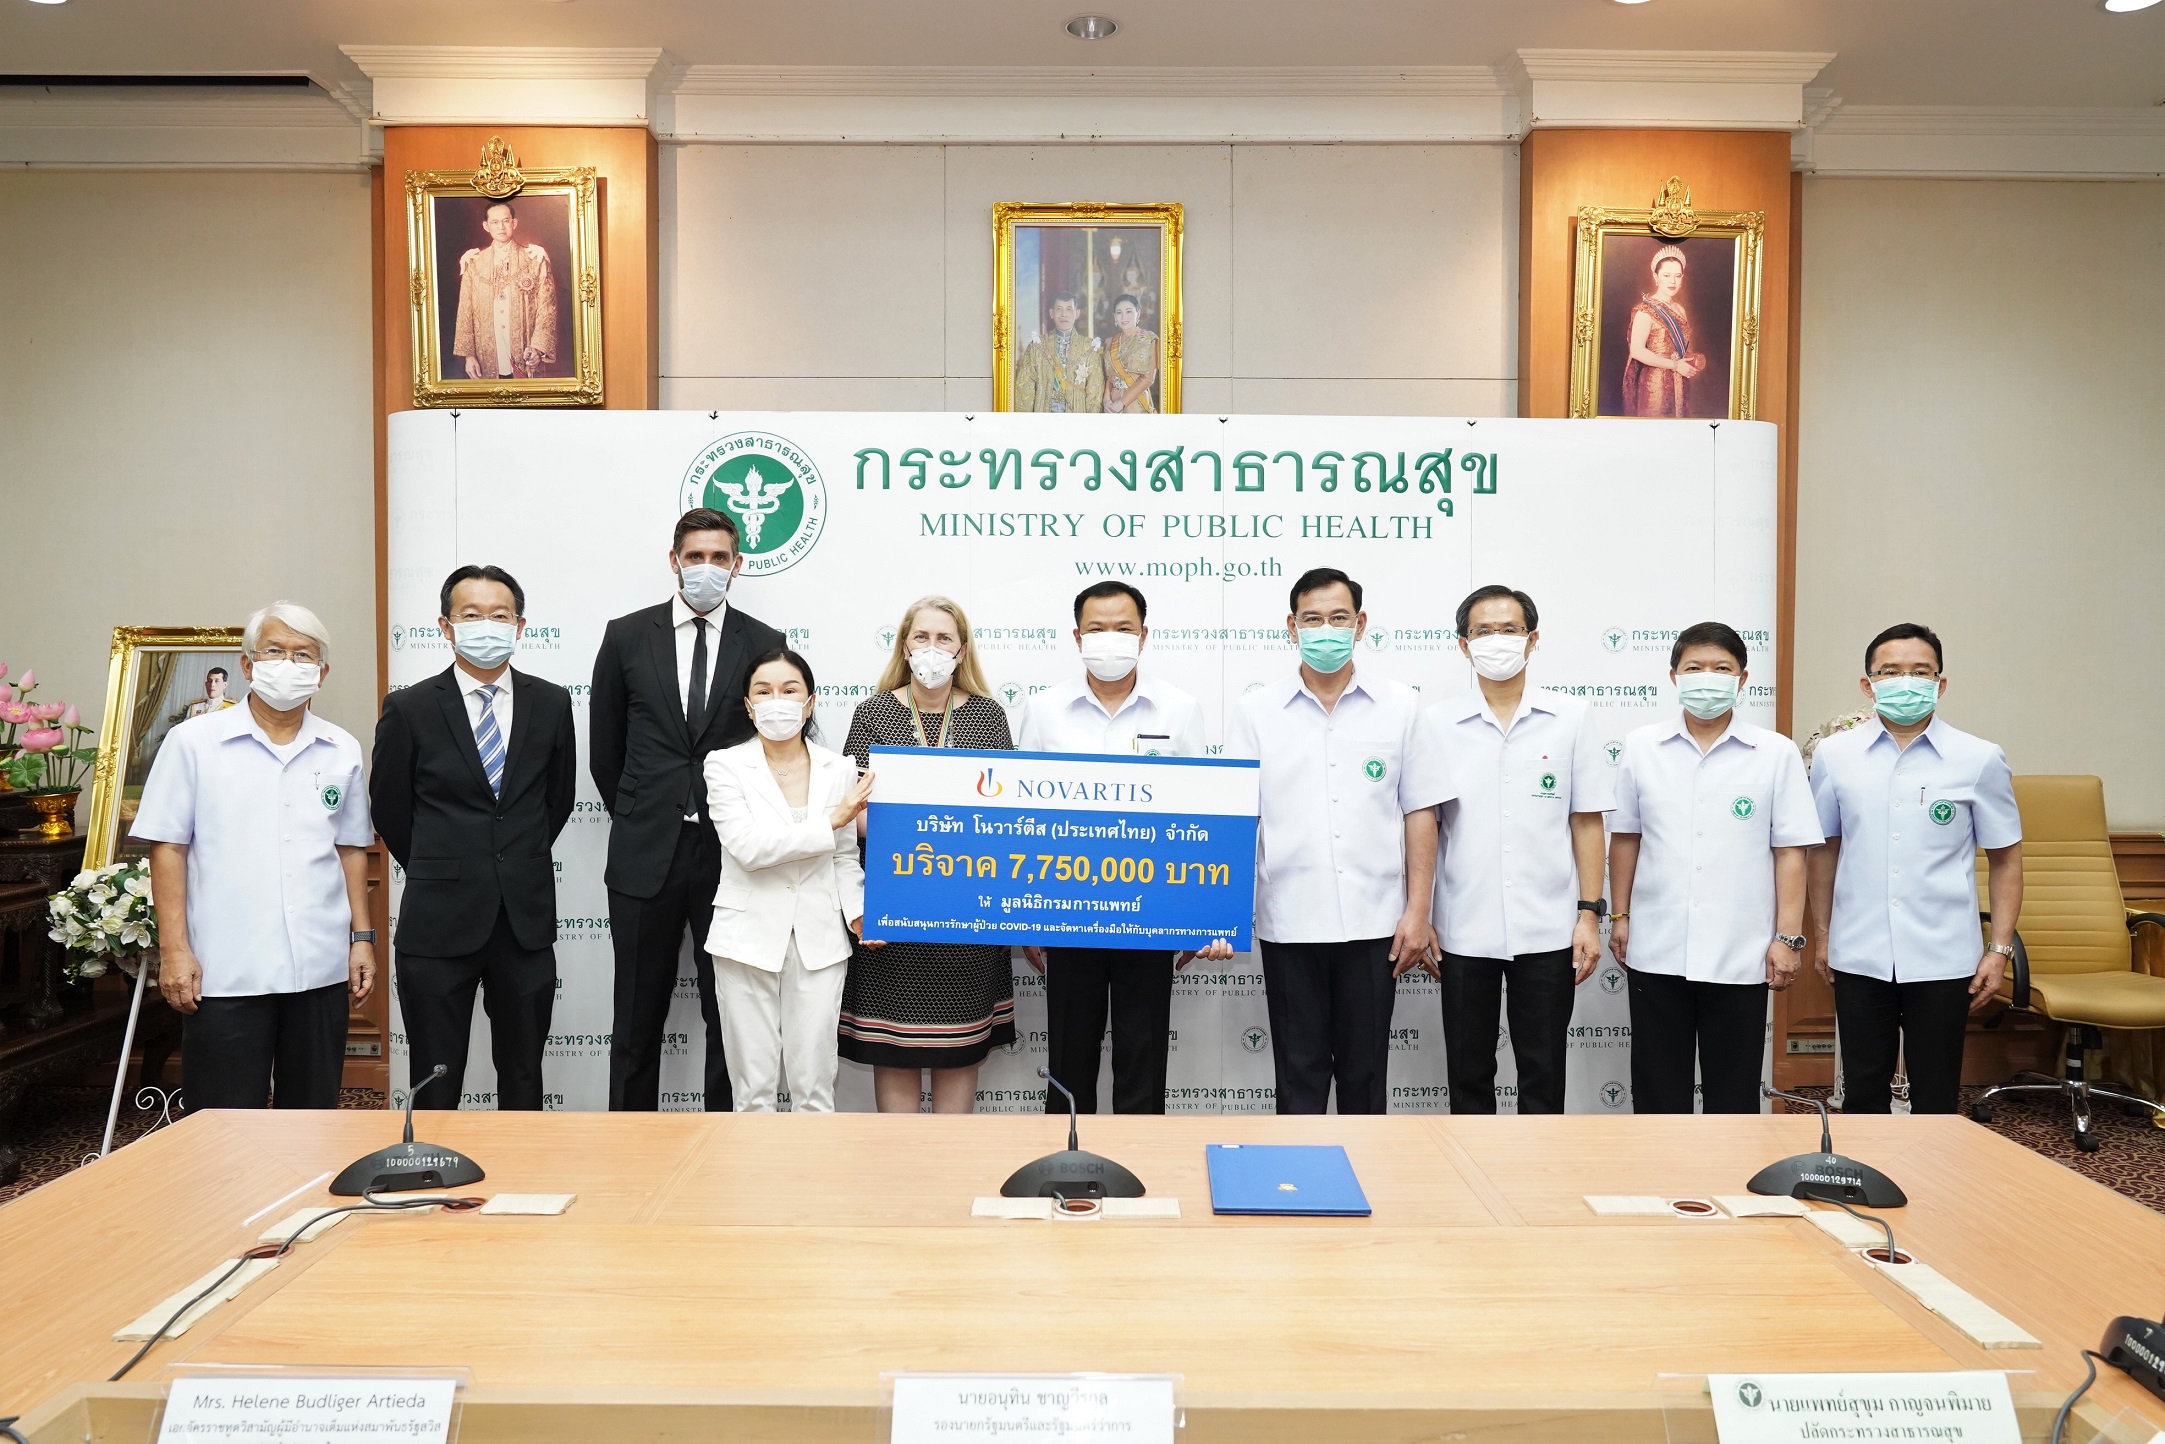 โนวาร์ตีส บริจาคเงิน 7.75 ล้านบาทเพื่อช่วยเหลือผู้ป่วยโควิด-19 ในประเทศไทย